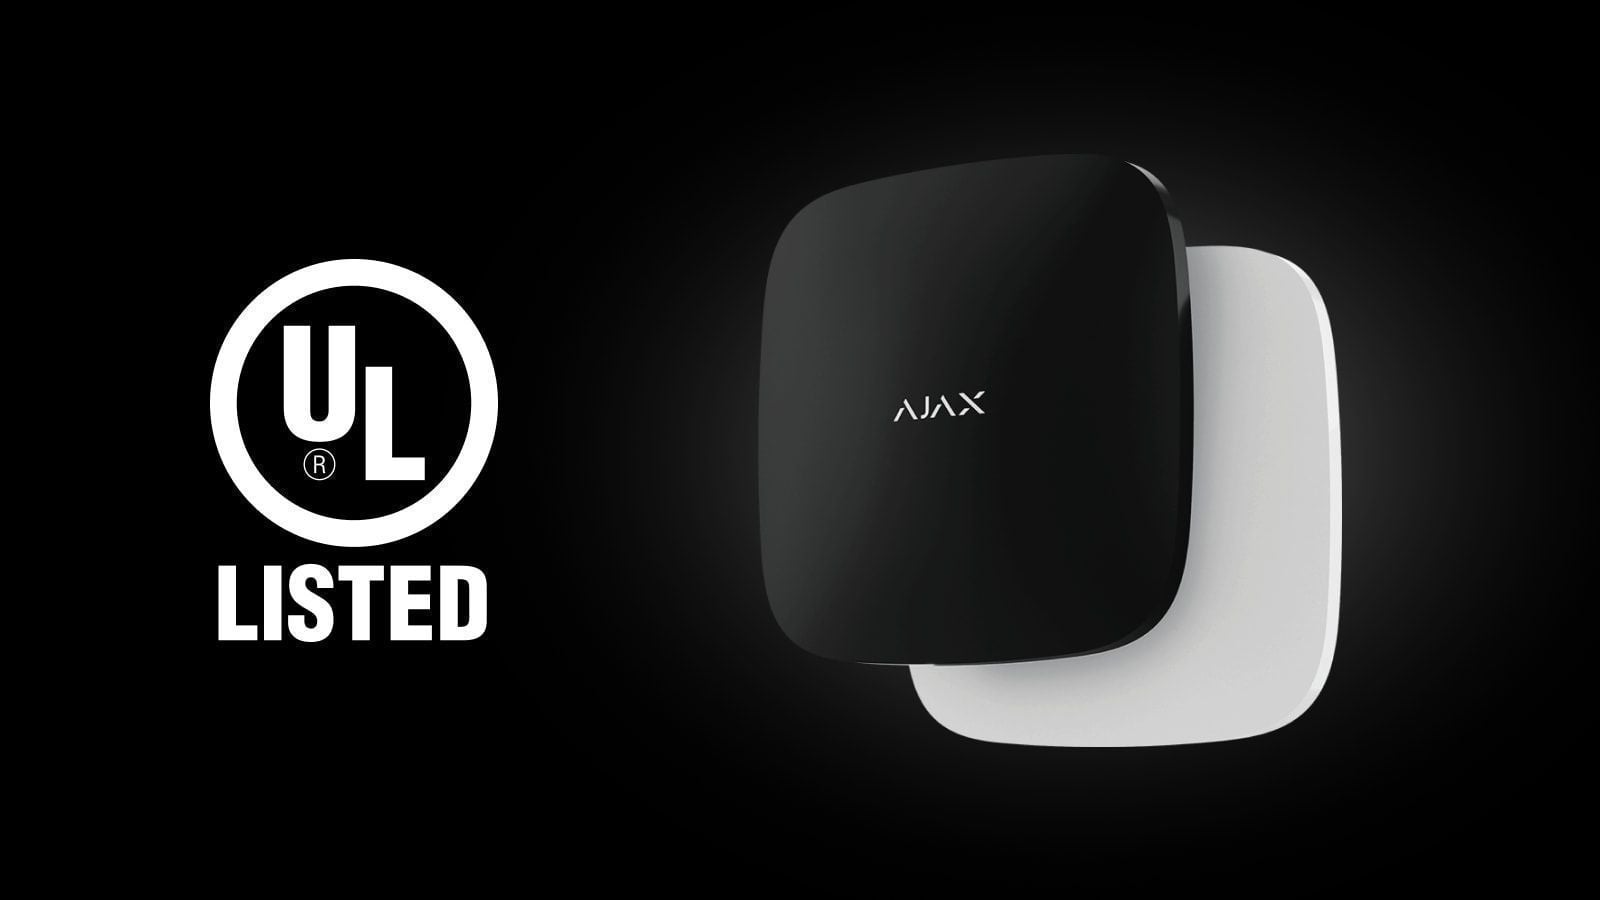 W jaki sposób firma Ajax przeszła testy jakości w USA i Kanadzie na przykładzie certyfikatu UL